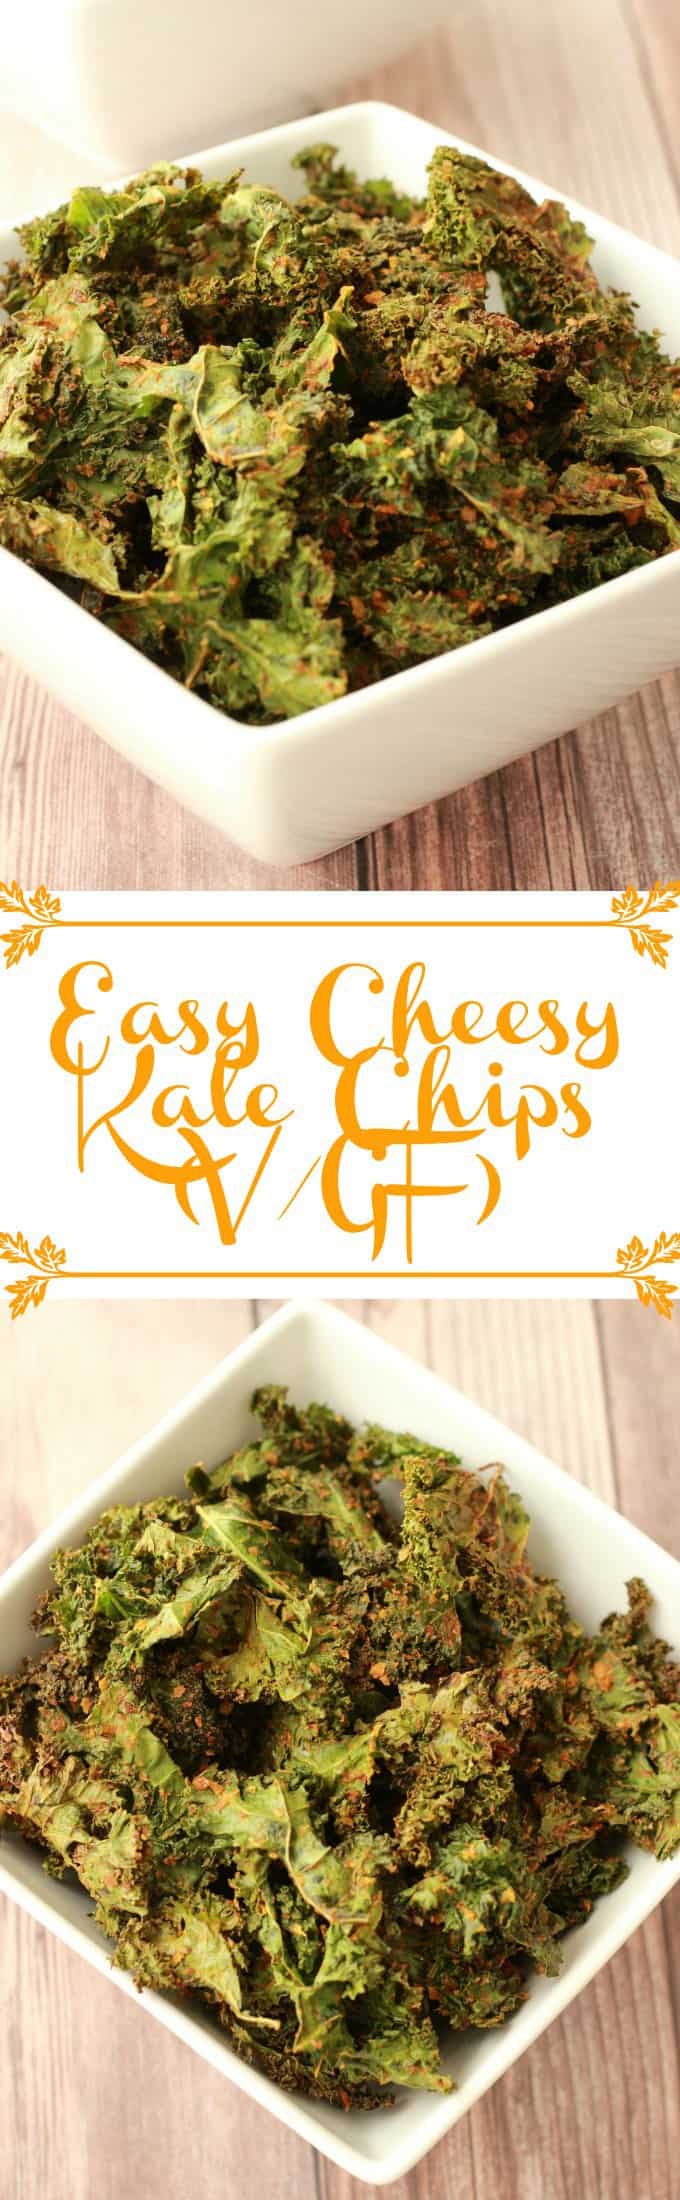 Easy Cheesy Kale Chips. Crispy, savory, cheesy and super healthy! #vegan #lovingitvegan #glutenfree #kalechips #snacks